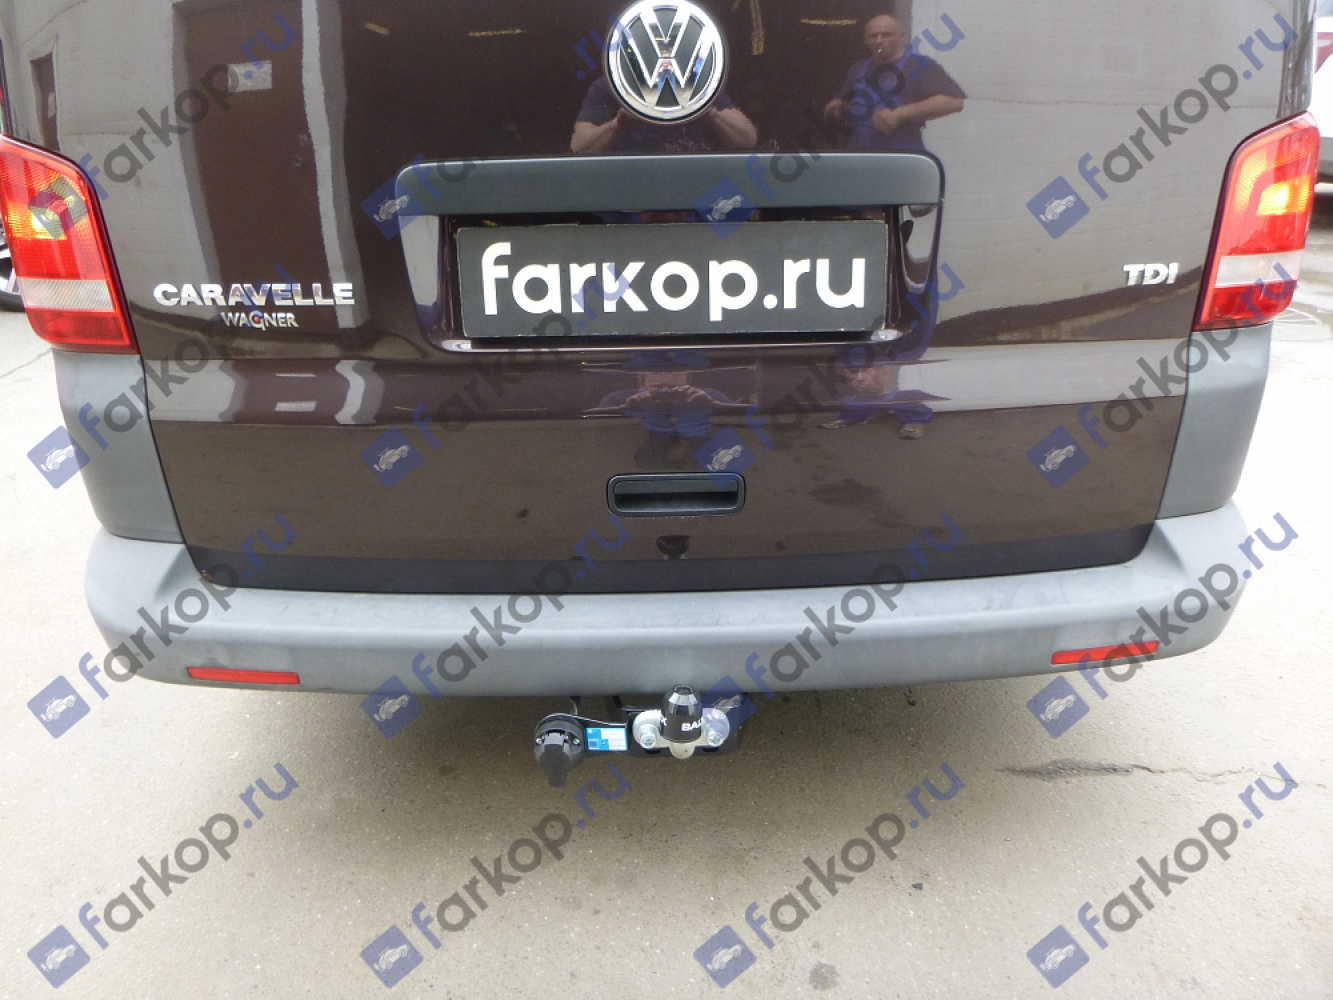 Фаркоп Baltex для Volkswagen Transporter T5 2003-2015 26199122 в 